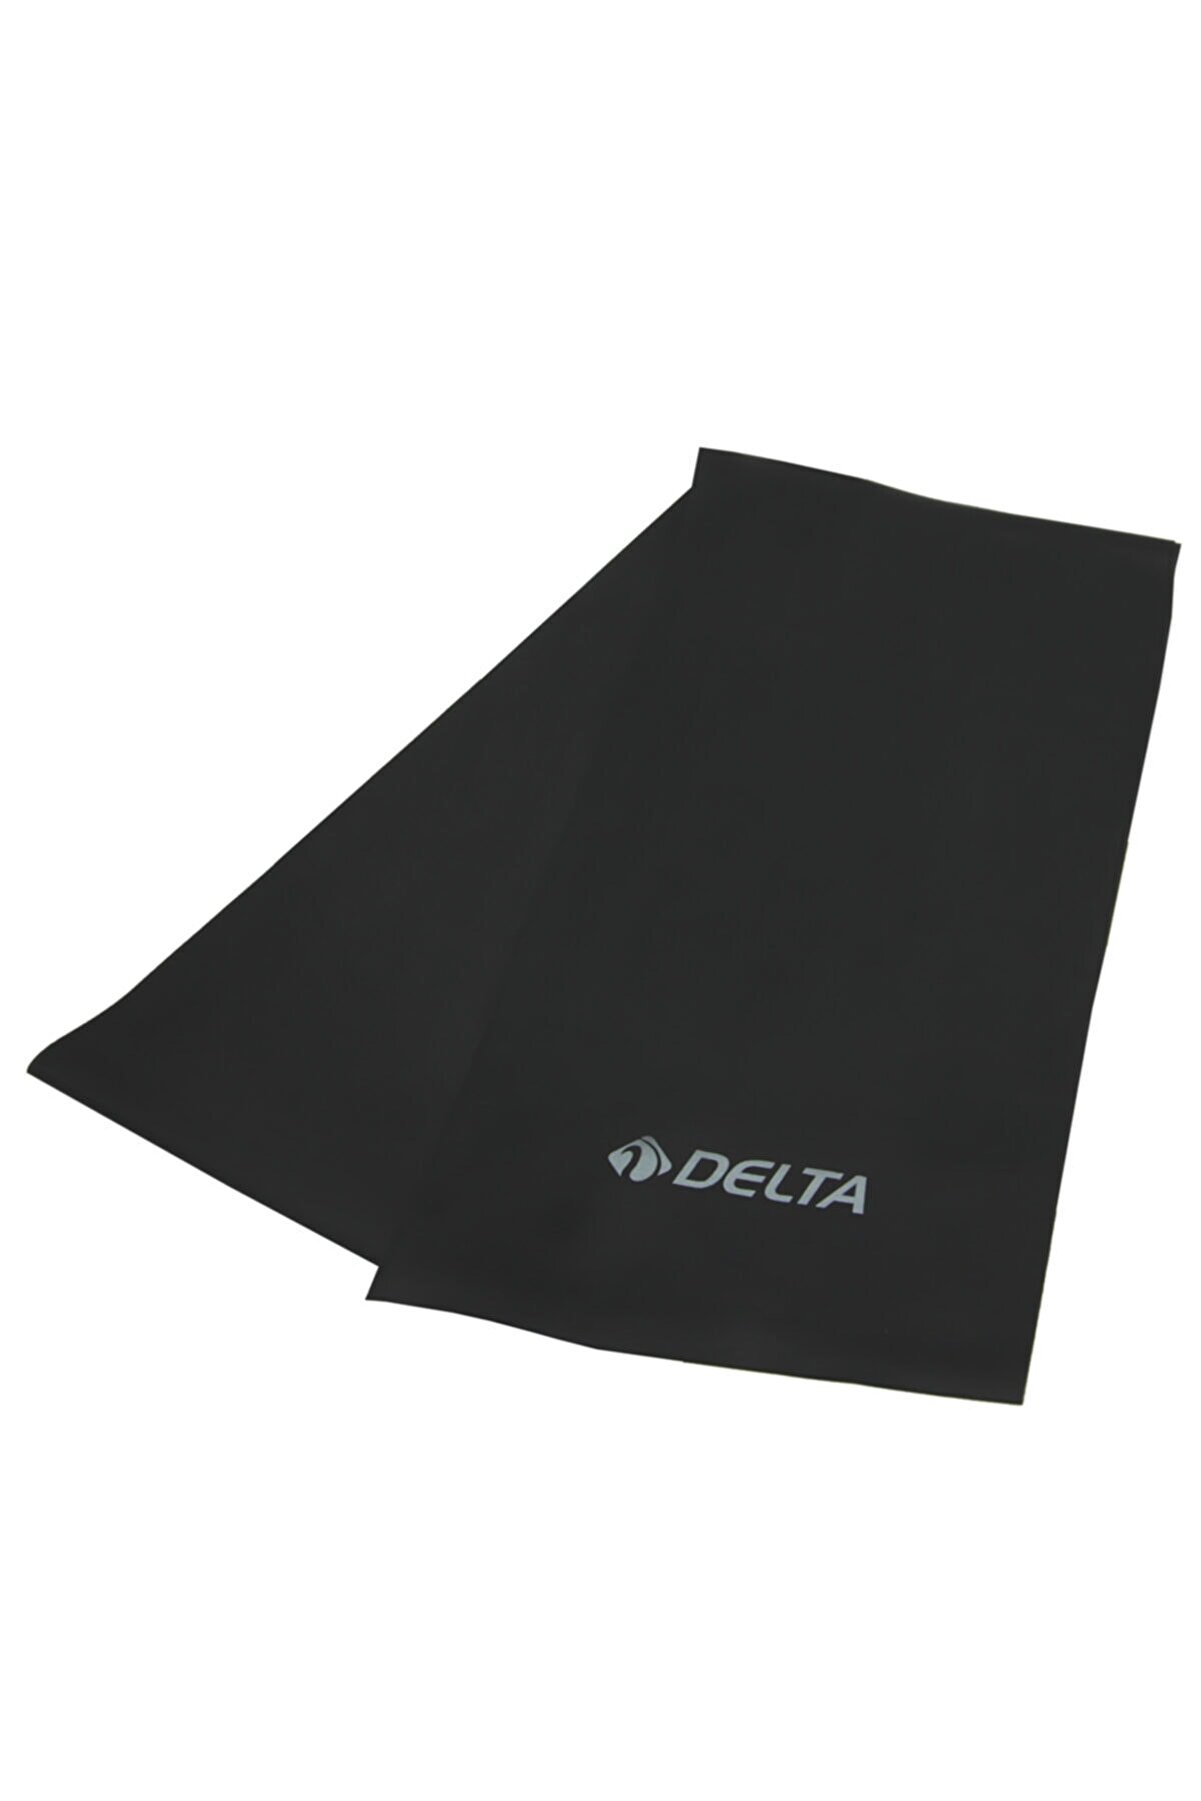 Delta Pilates Bandı Tam Sert 150 x 15 Cm Egzersiz Direnç Lastiği